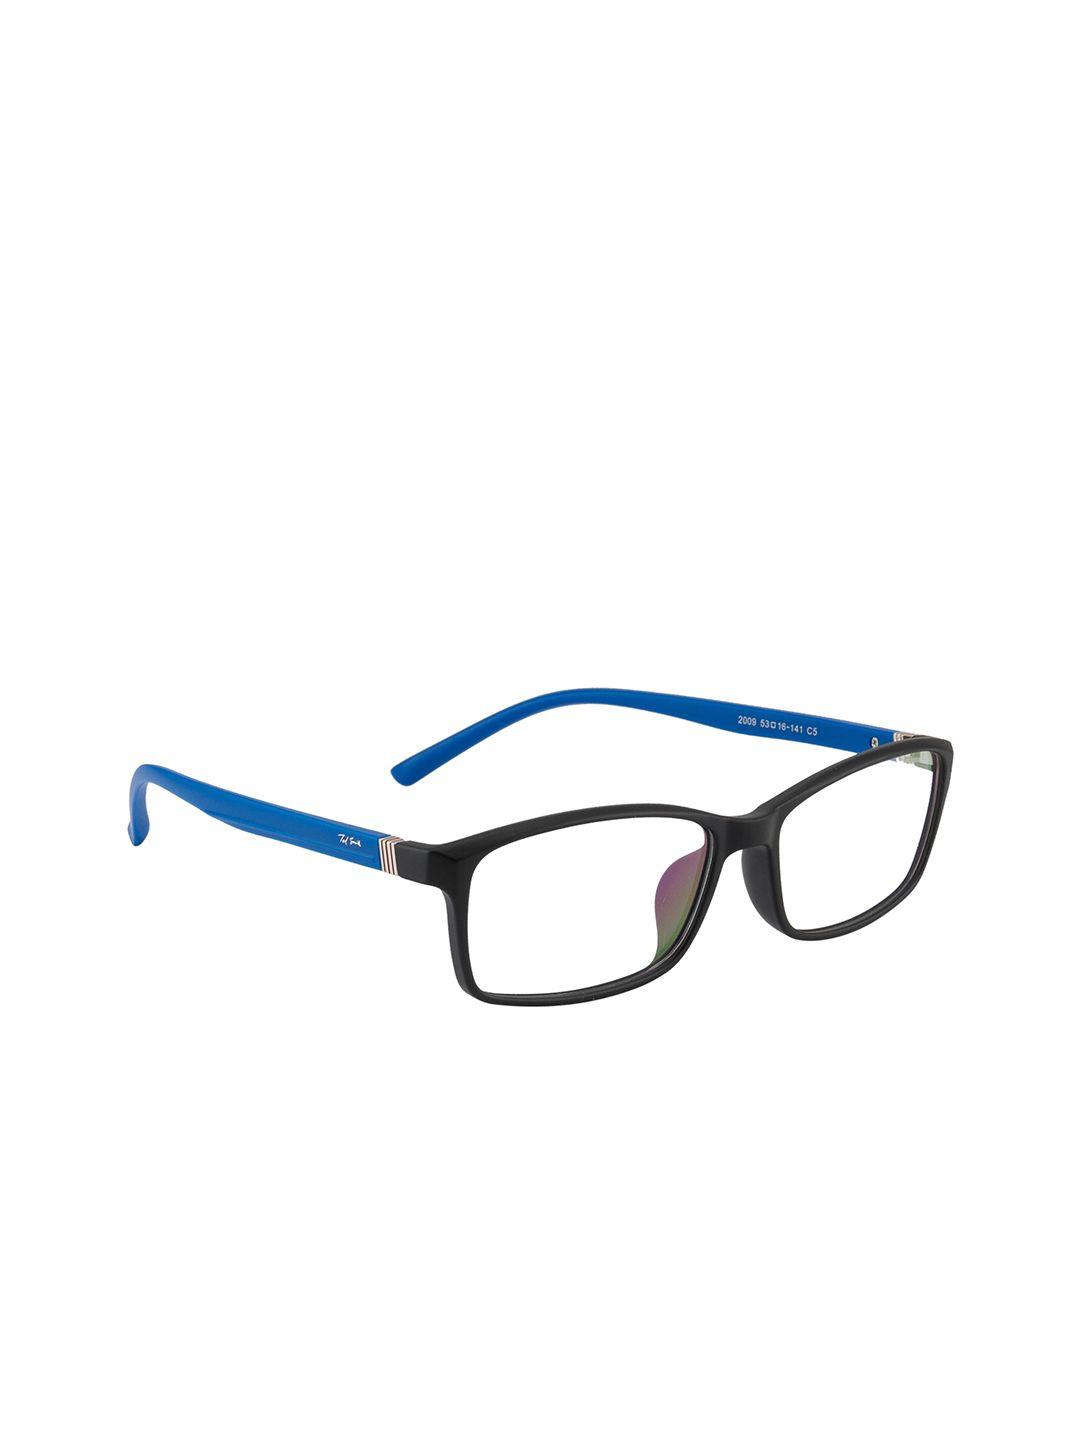 ted smith unisex transparent full rim rectangle frames eyeglasses